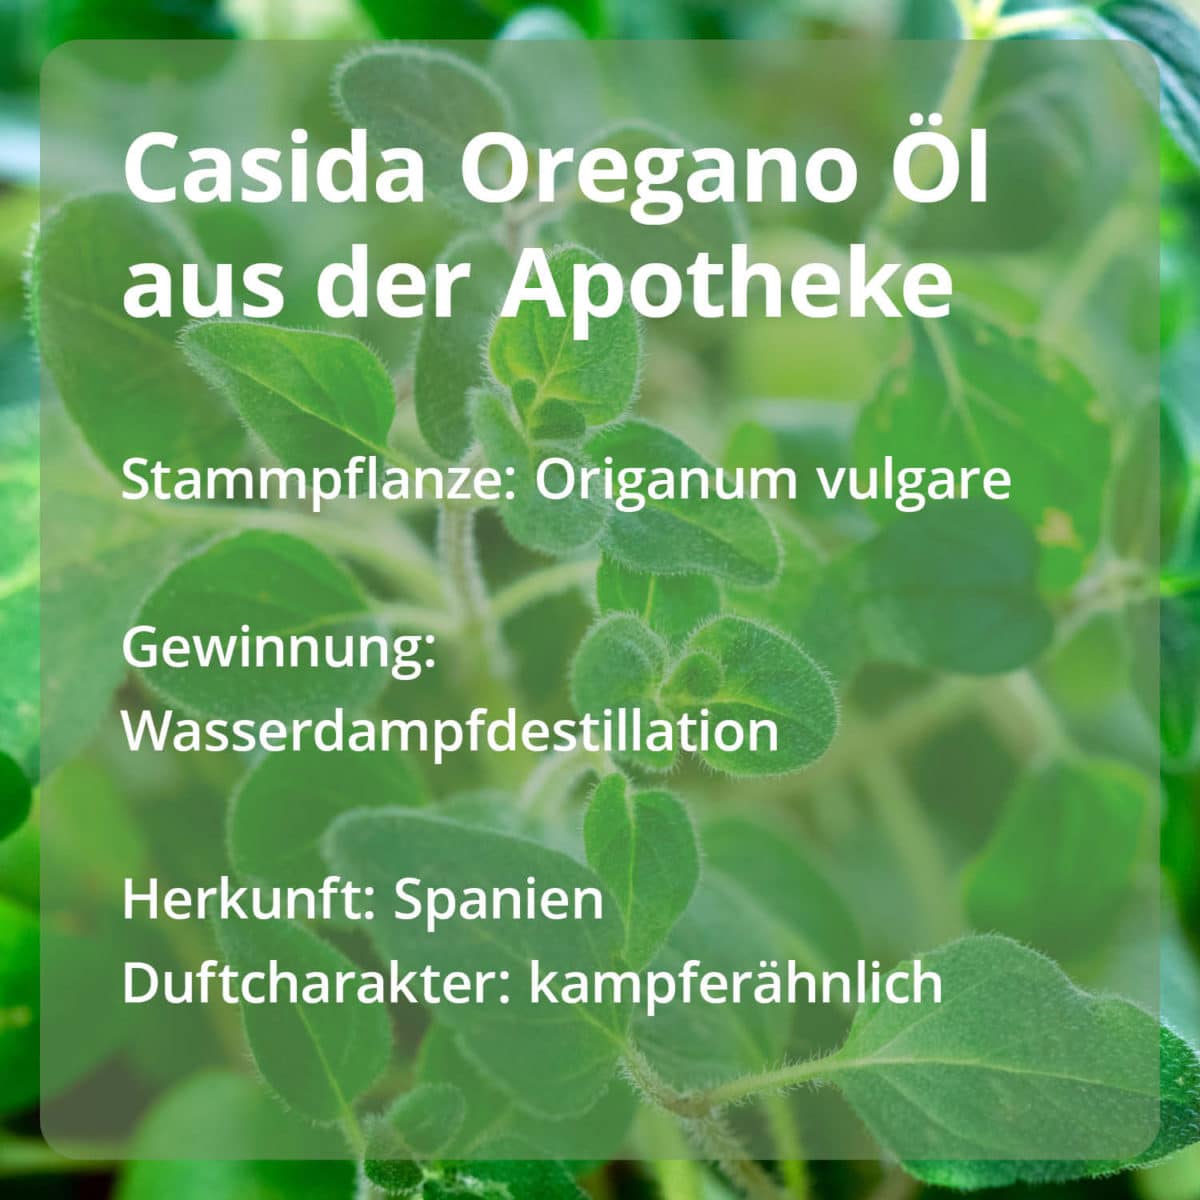 Casida Oregano Oil Casida PZN 16486789 Ätherische Öle Stammpflanze Gewinnung Herkunft naturrein